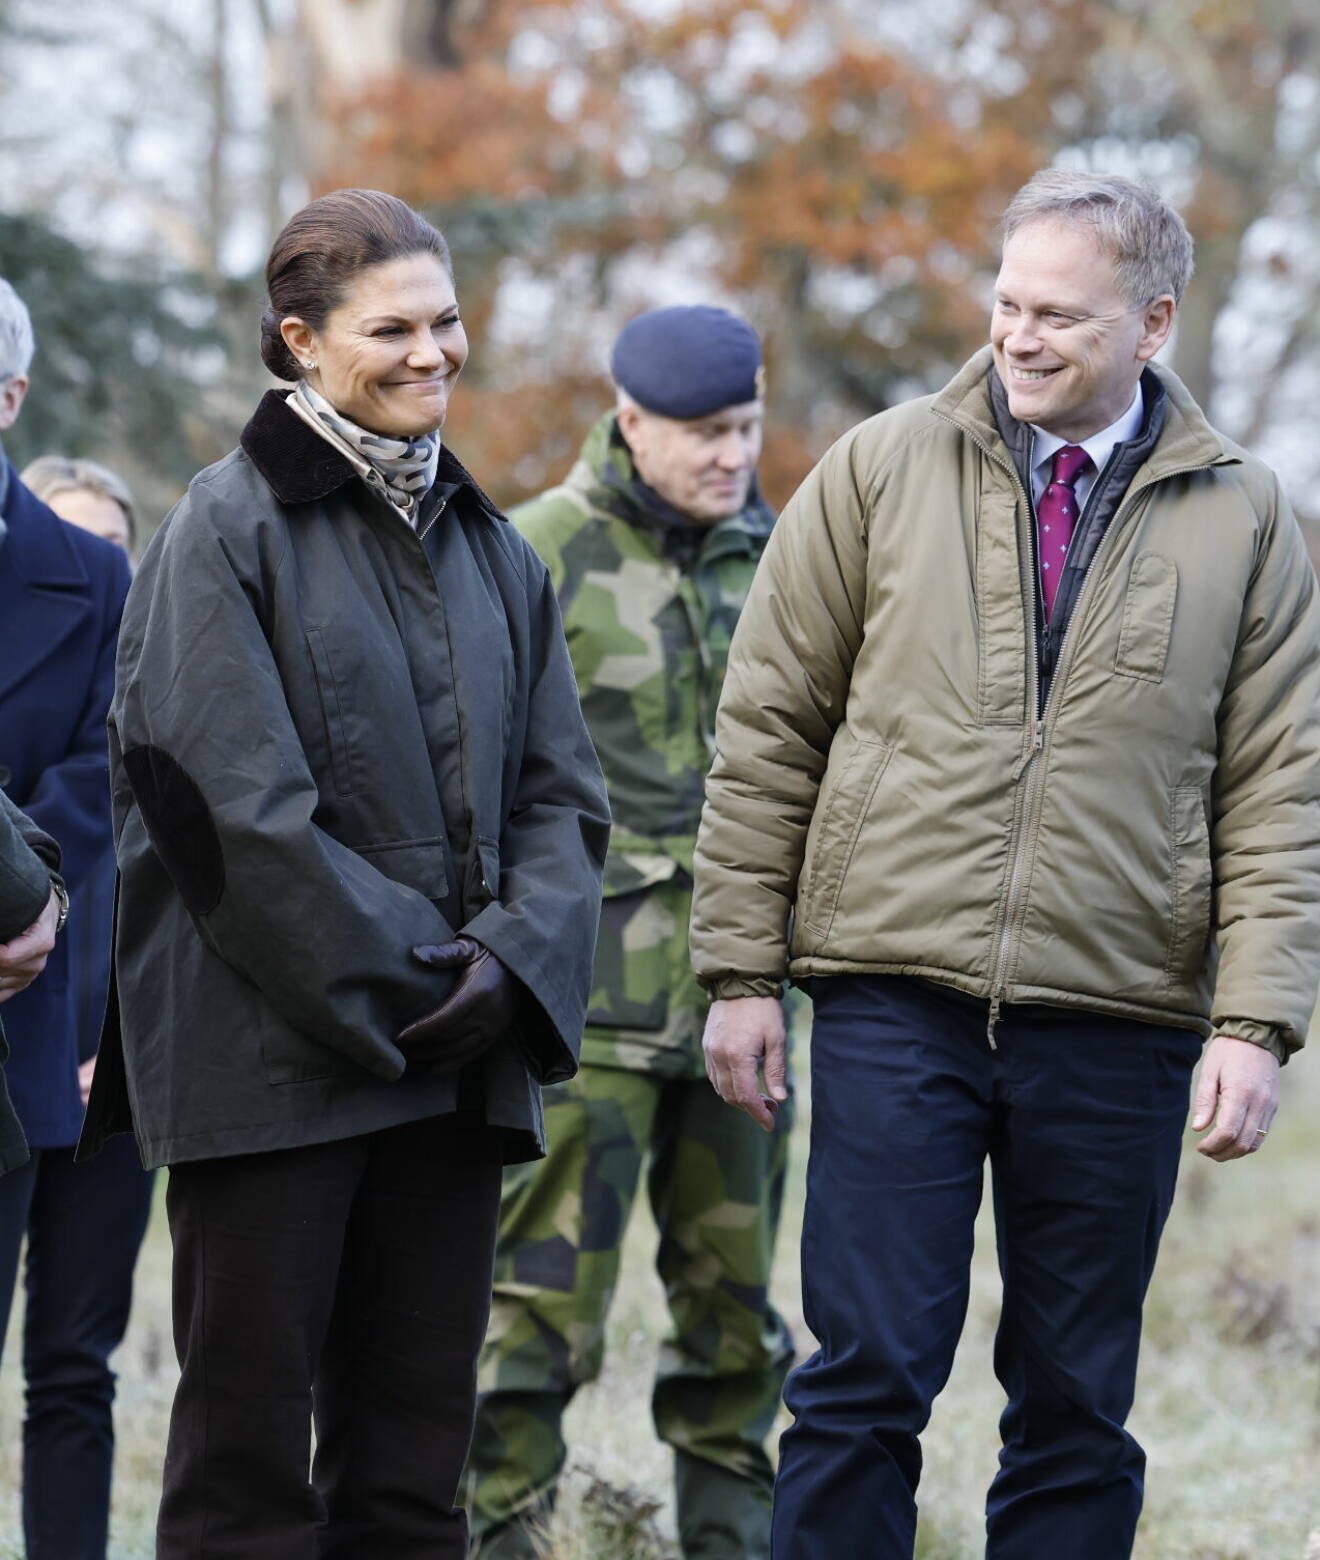 Kronprinsessan Victoria med den brittiske försvarsministern Grant Shapps